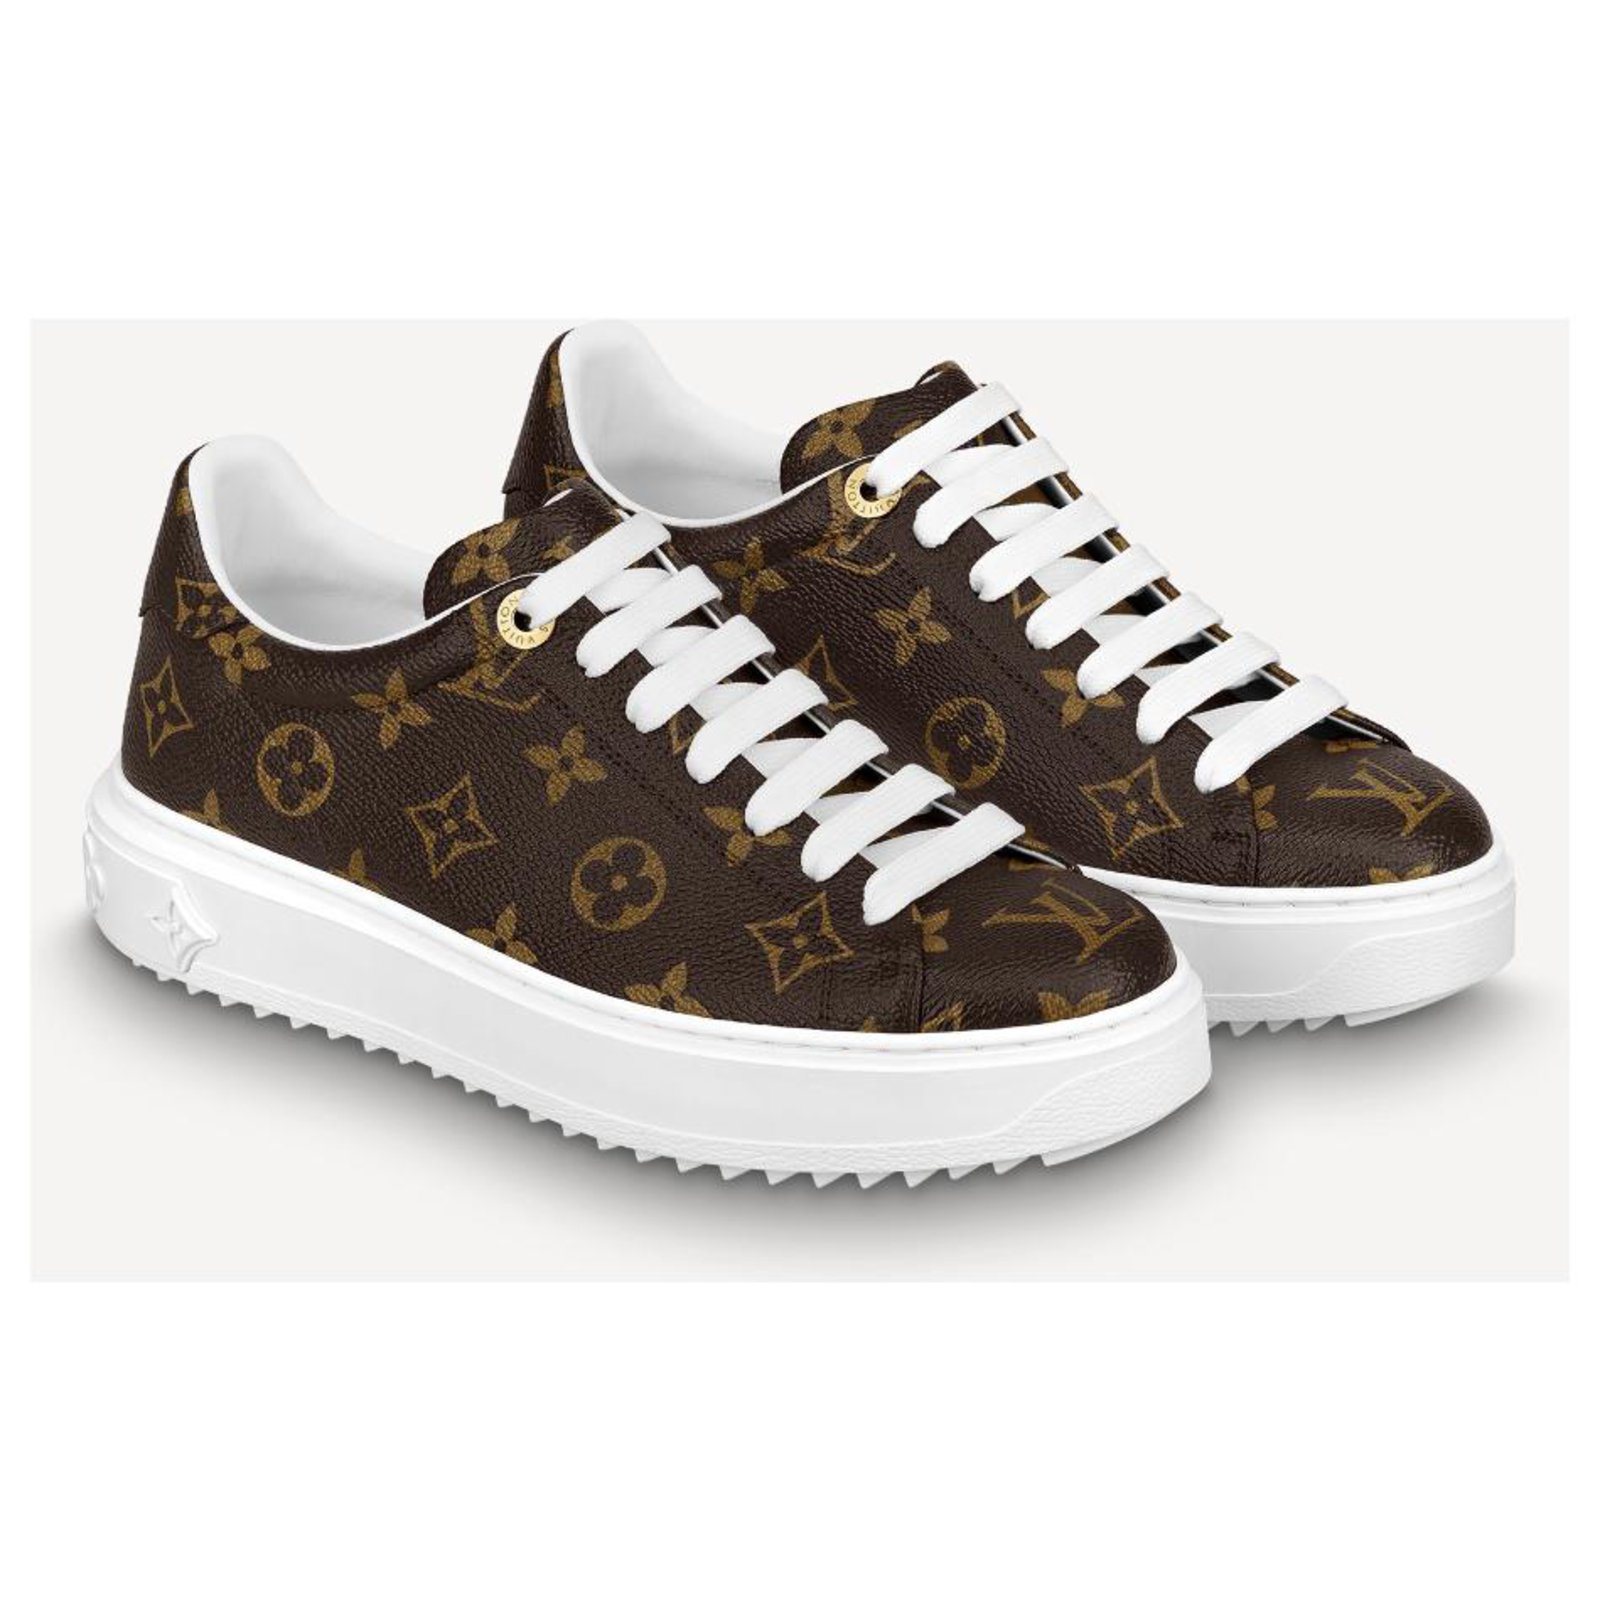 Louis Vuitton M43644 - Riñonera monograma : : Ropa, Zapatos y  Accesorios